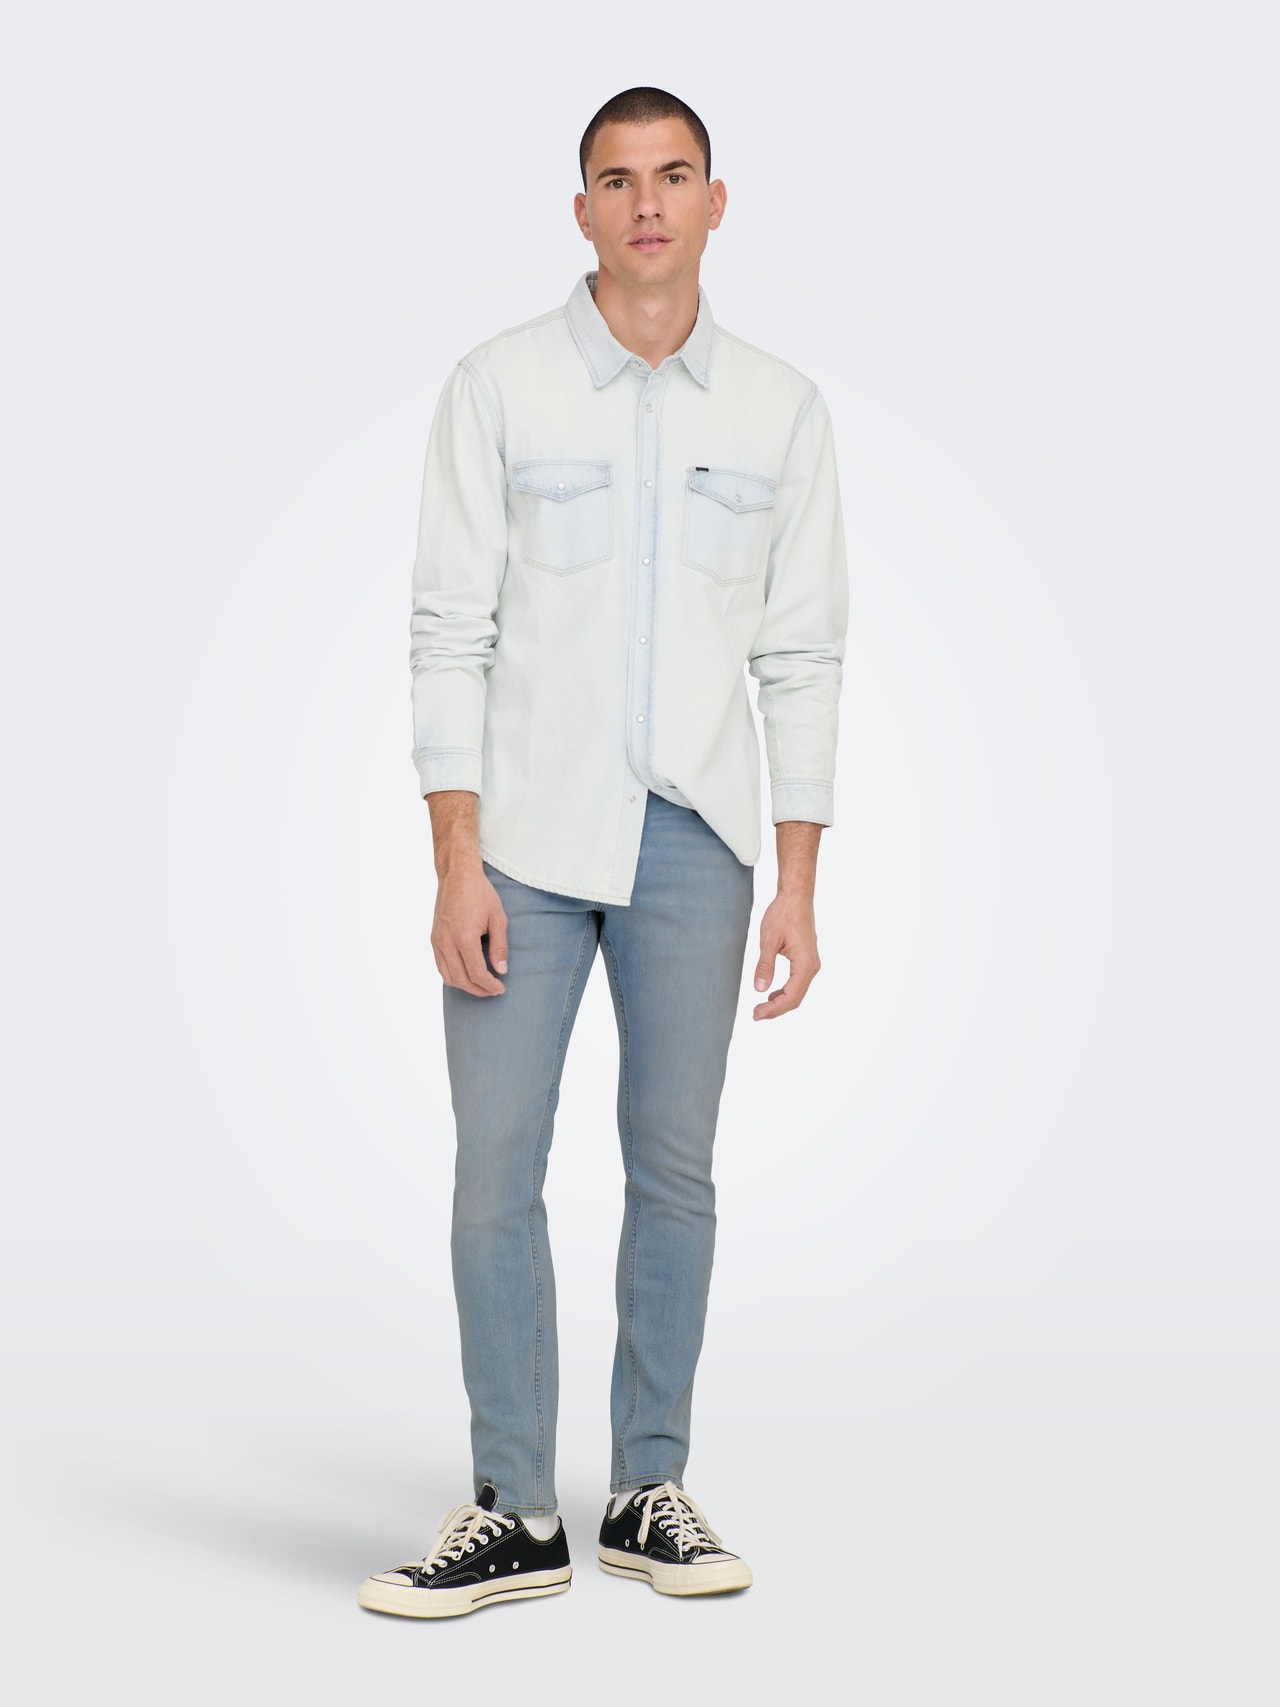 ONLY & SONS Jeans Slim Fit -Light Blue Denim - 22024924